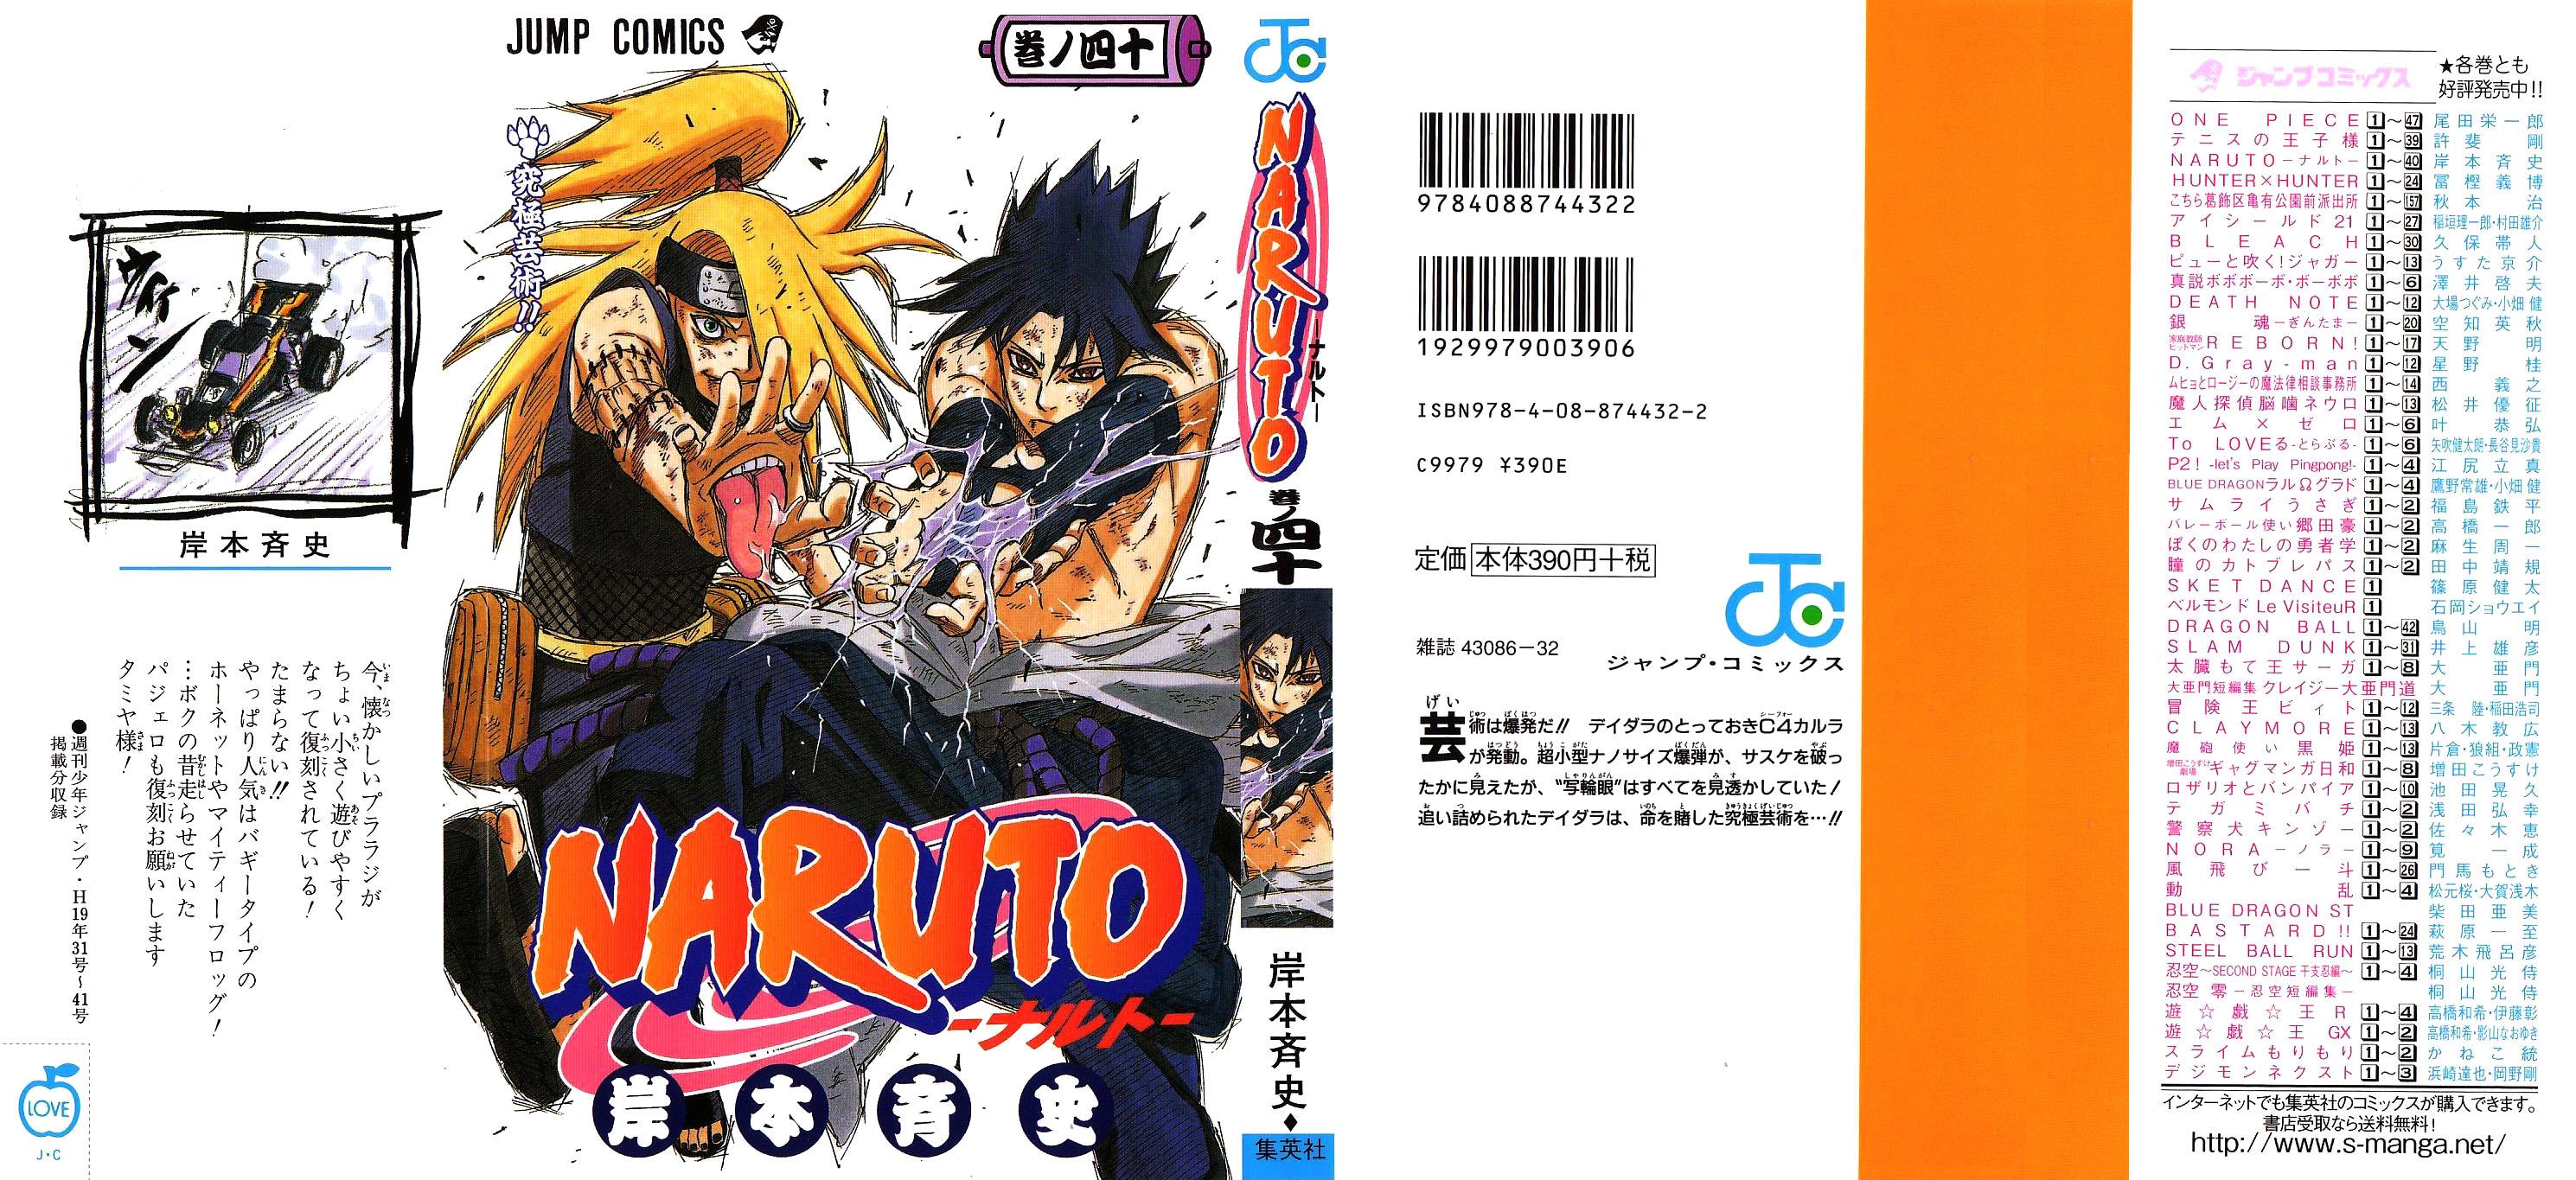 Naruto ナルト 54巻 漫画村 まんがまとめ 無料コミック漫画 ネタバレ